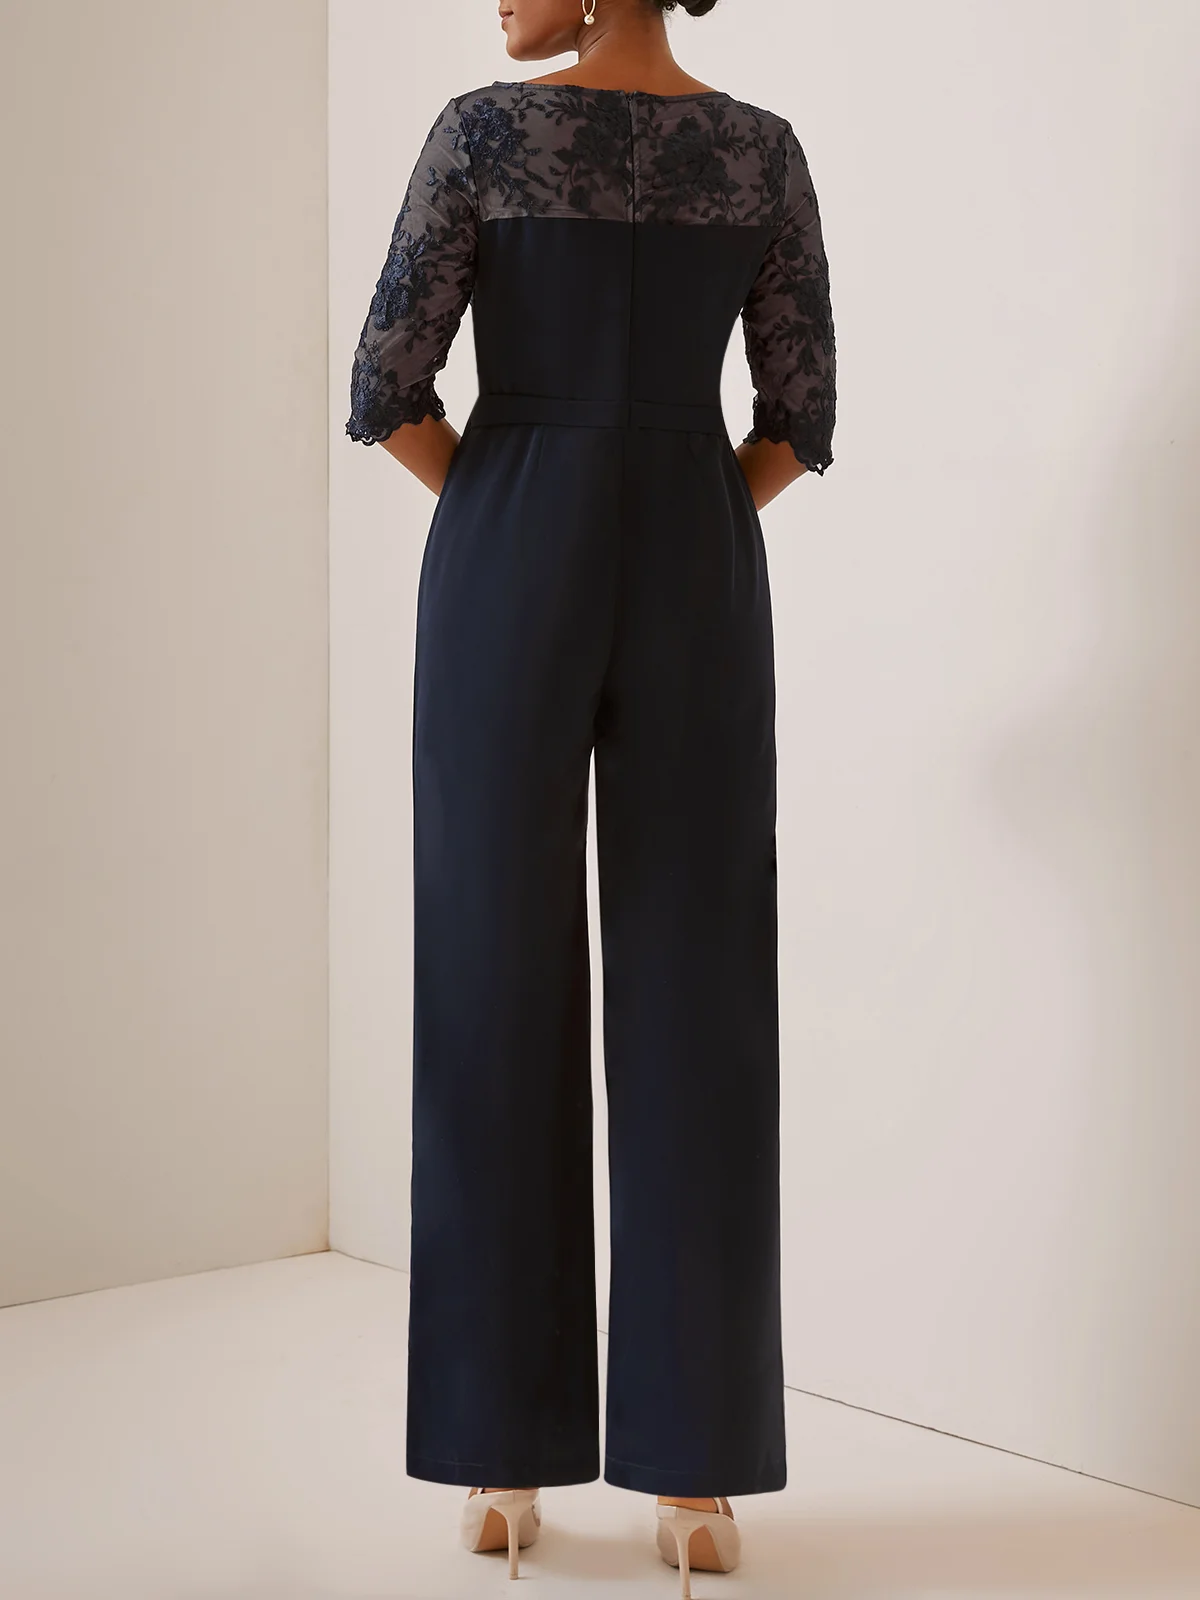 Combinaisons Femmes Plain Printemps / Automne Élégant Polyester Taille Haute Aucune élasticité Fête Ample Long